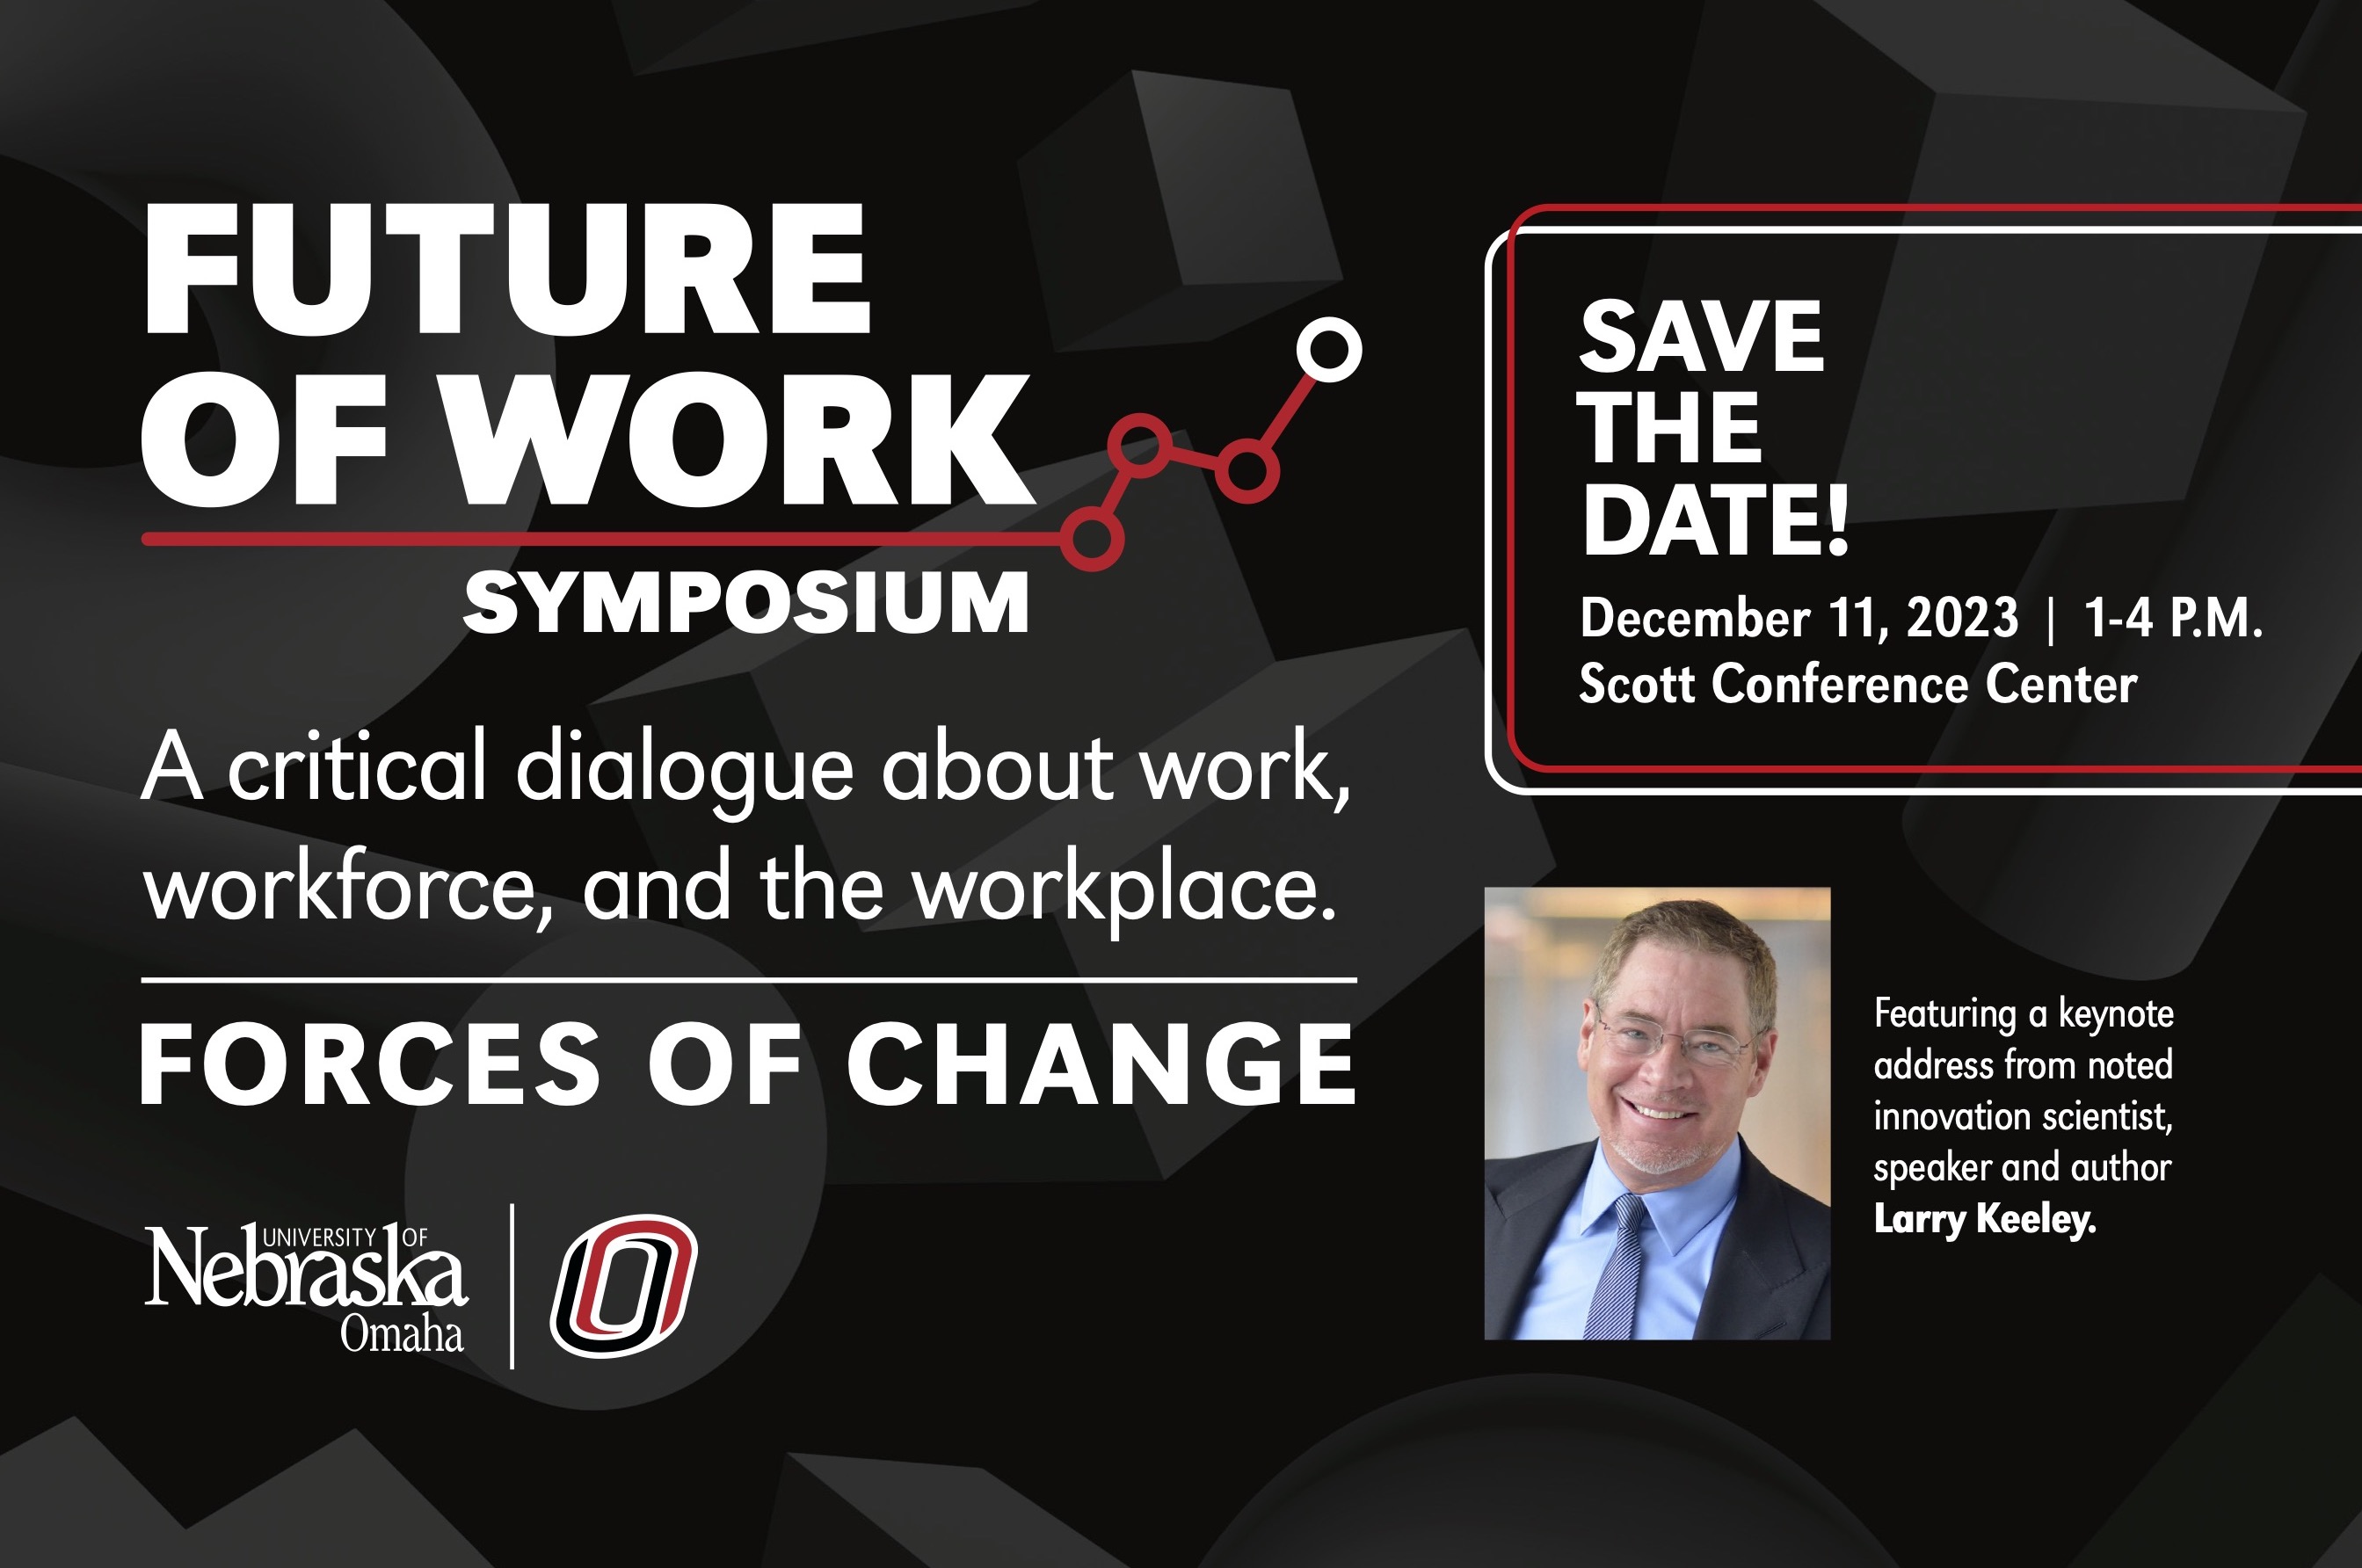 Future of Work Symposium, December 11th 2023